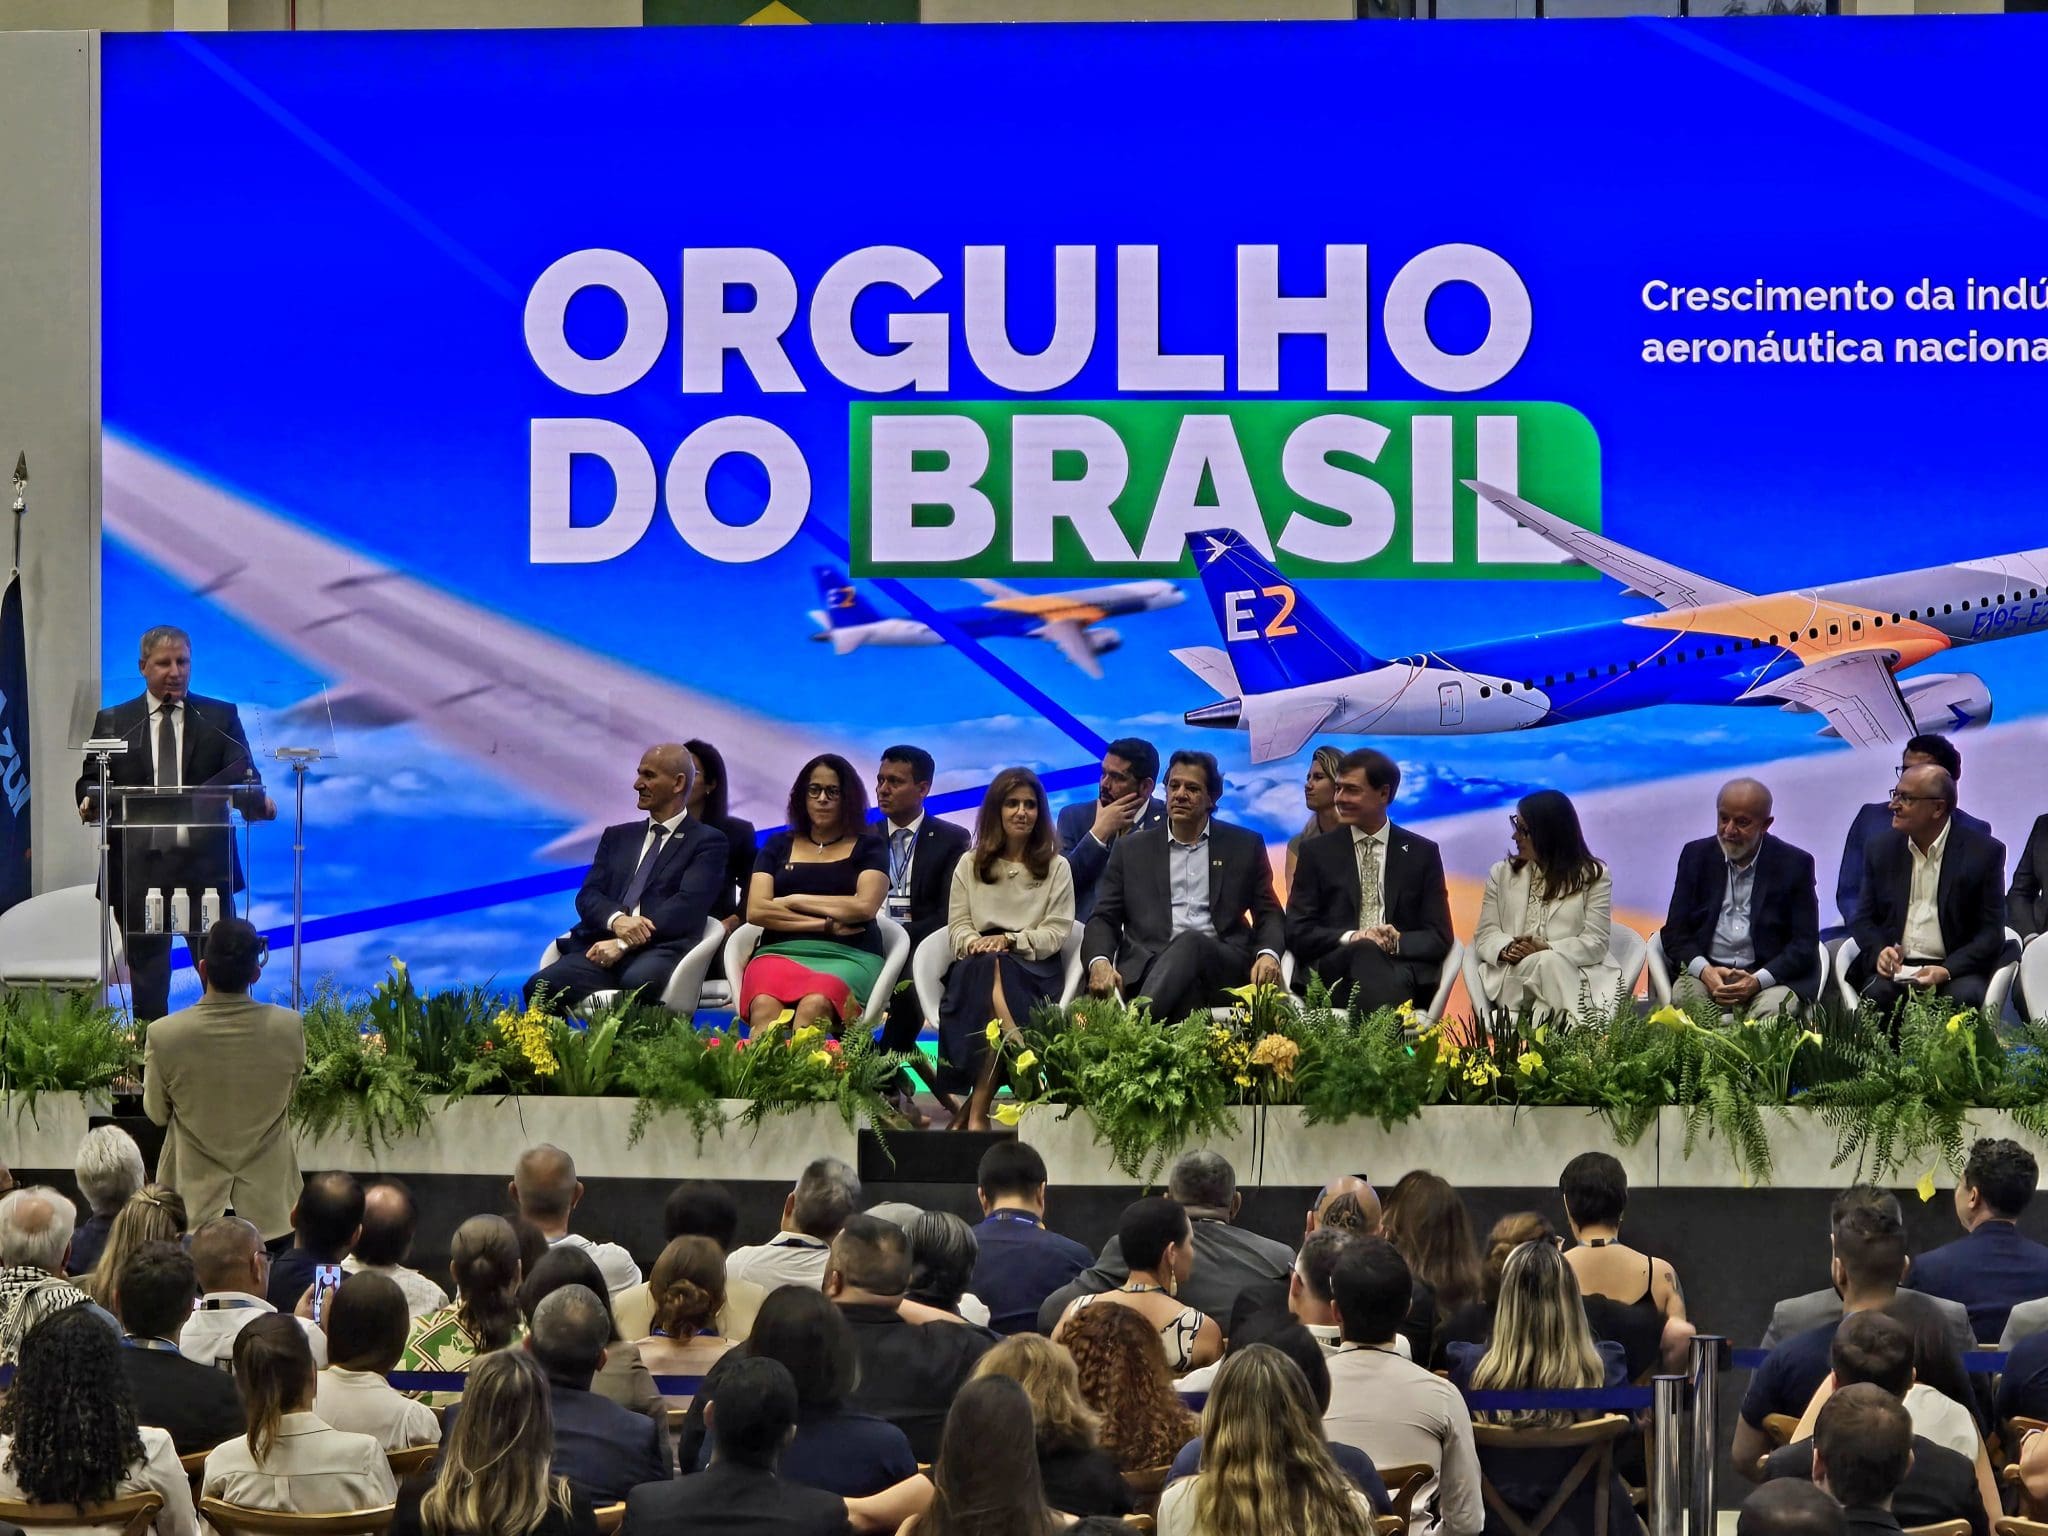 cerimônia de batismo de uma aeronave, que recebeu o nome Azul & Embraer. Orgulho do Brasil